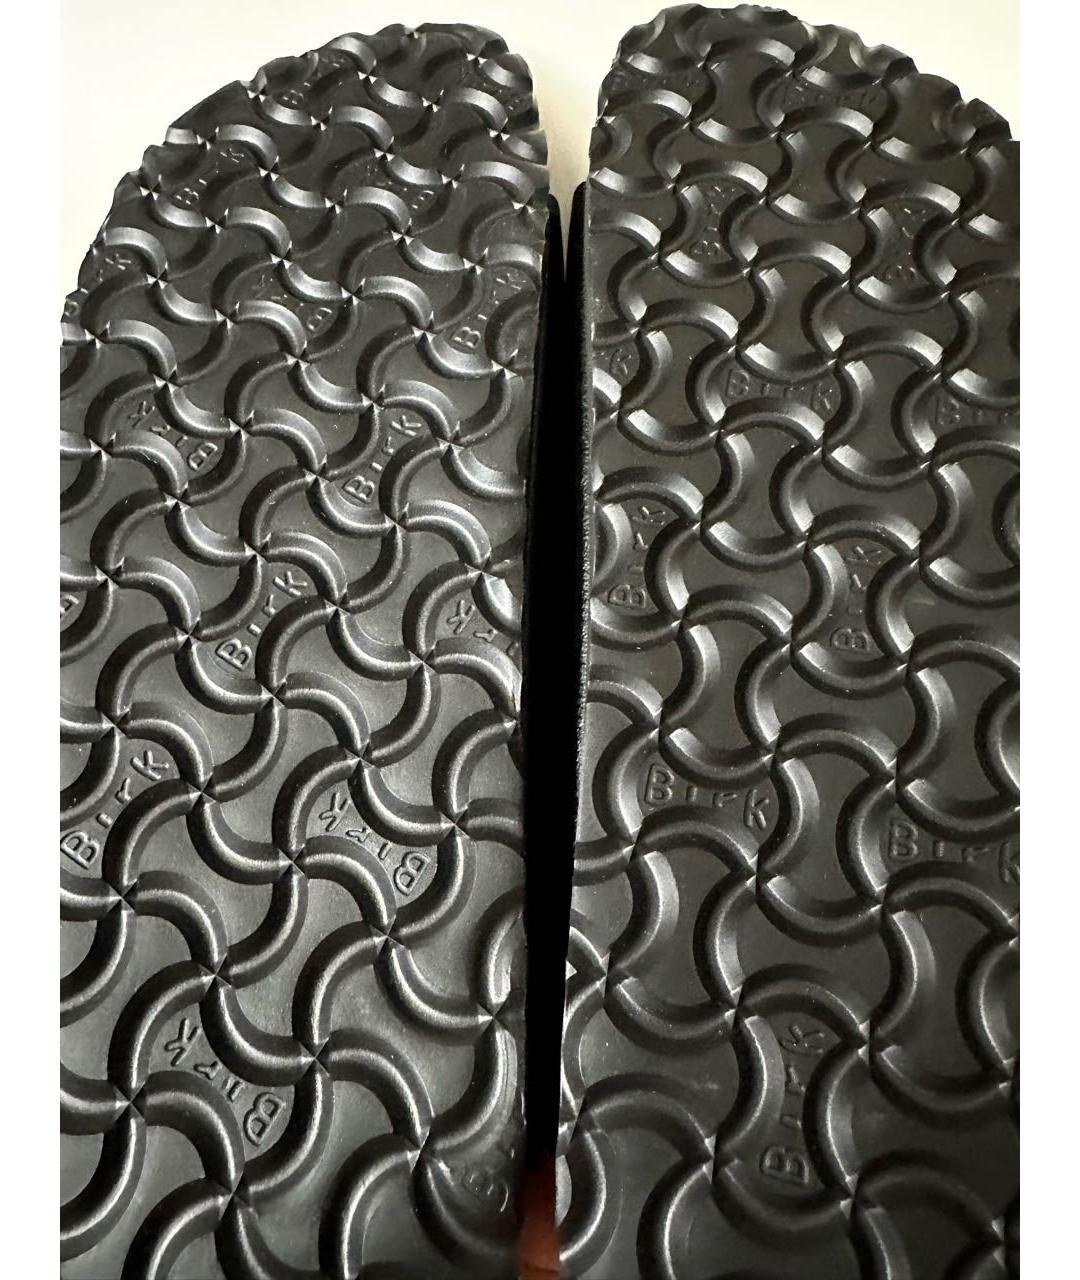 BIRKENSTOCK Черные синтетические сандалии, фото 4